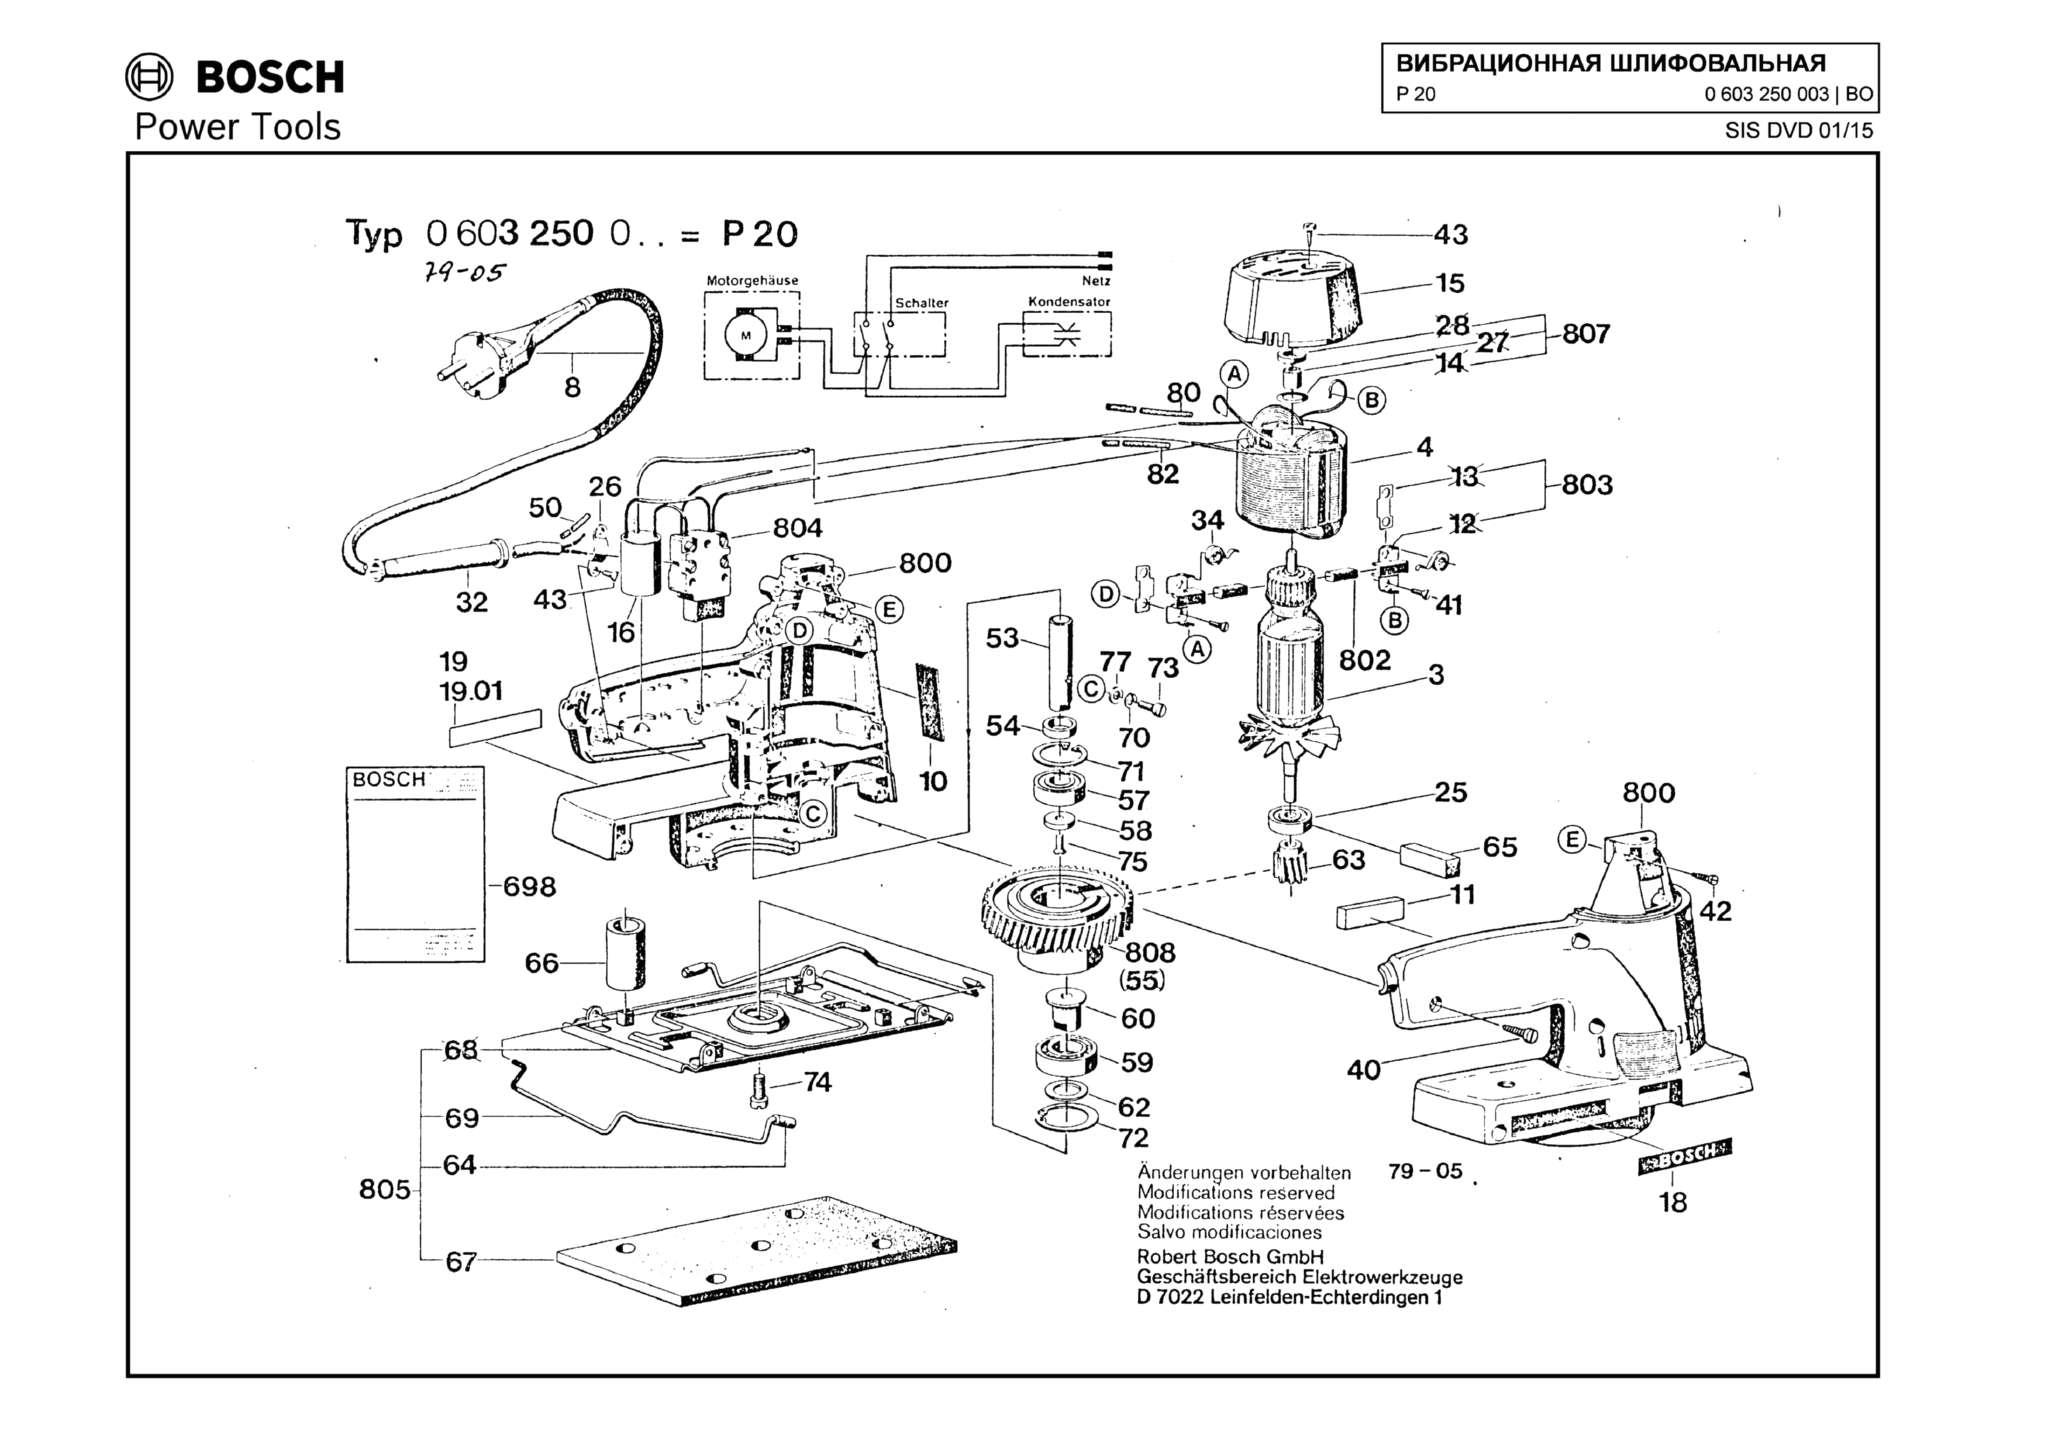 Запчасти, схема и деталировка Bosch P 20 (ТИП 0603250003)